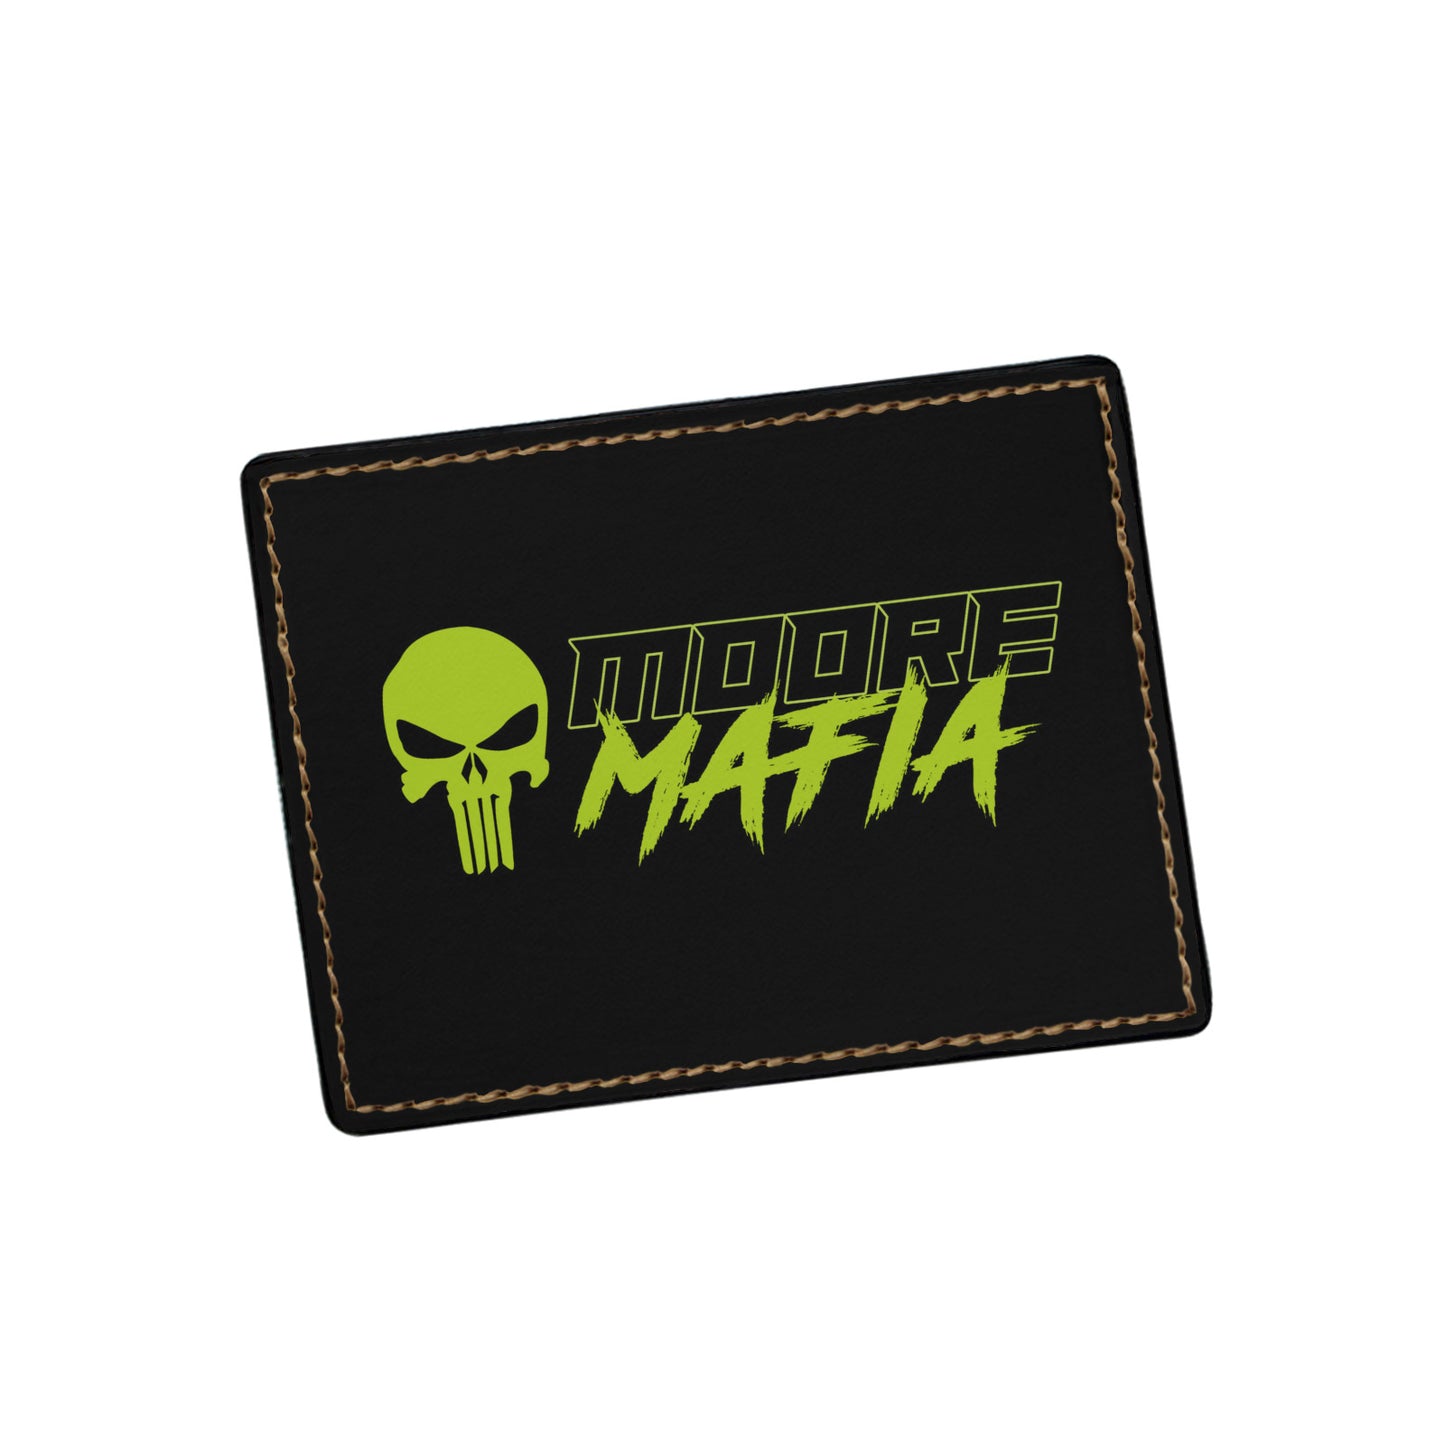 Moore Mafia Card Holder